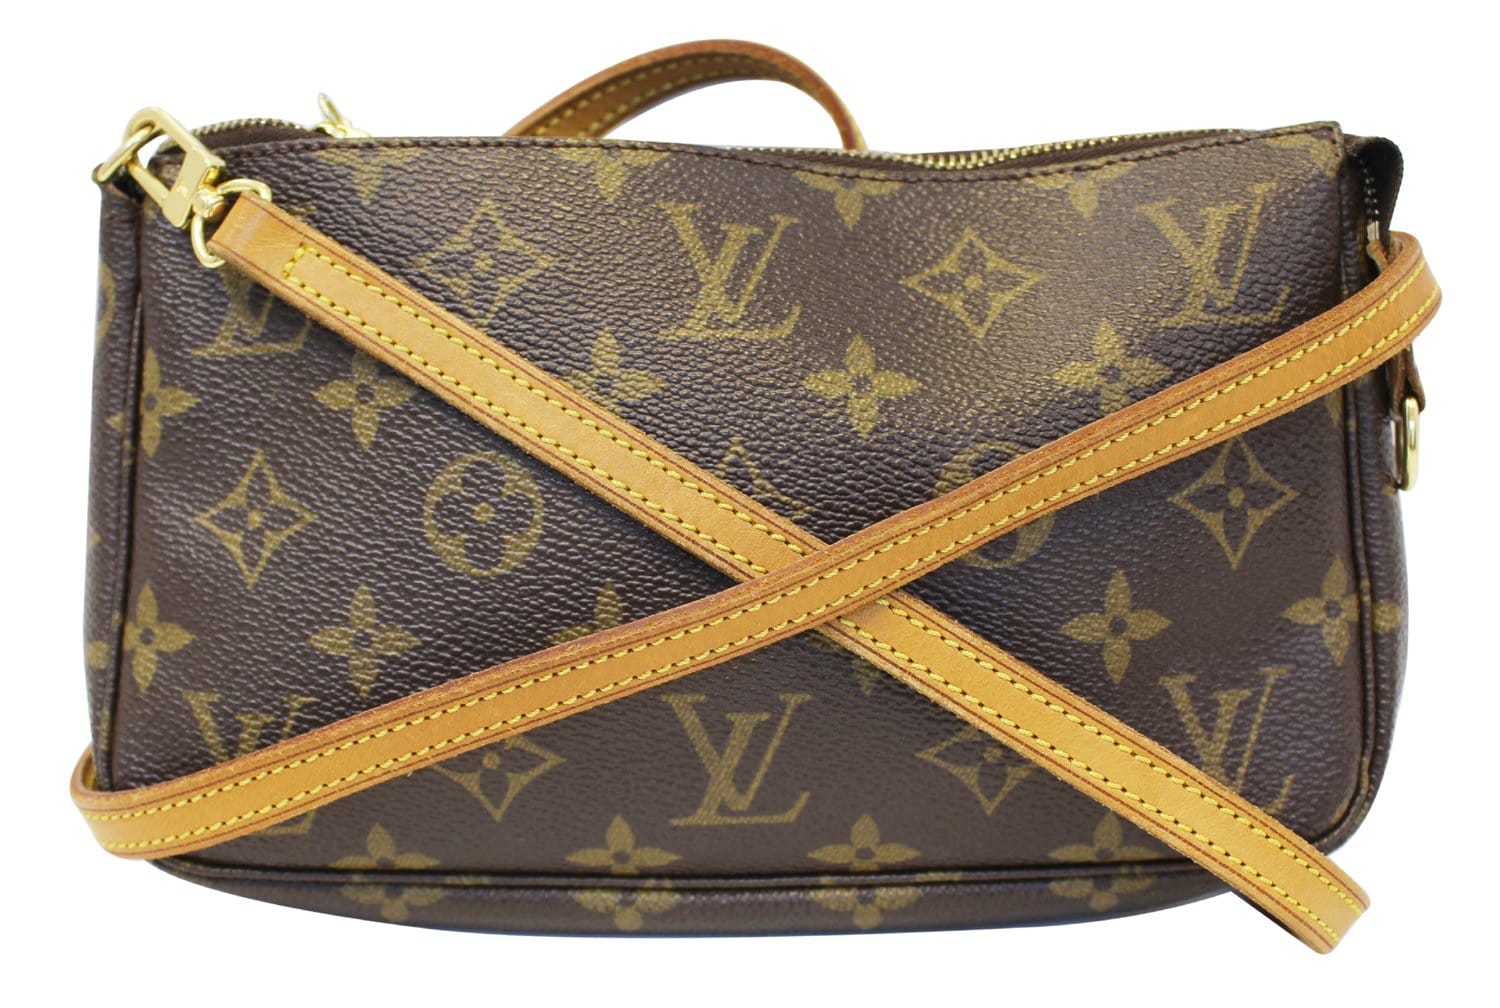 Louis Vuitton Monogram Canvas 16mm Bag Strap – I MISS YOU VINTAGE